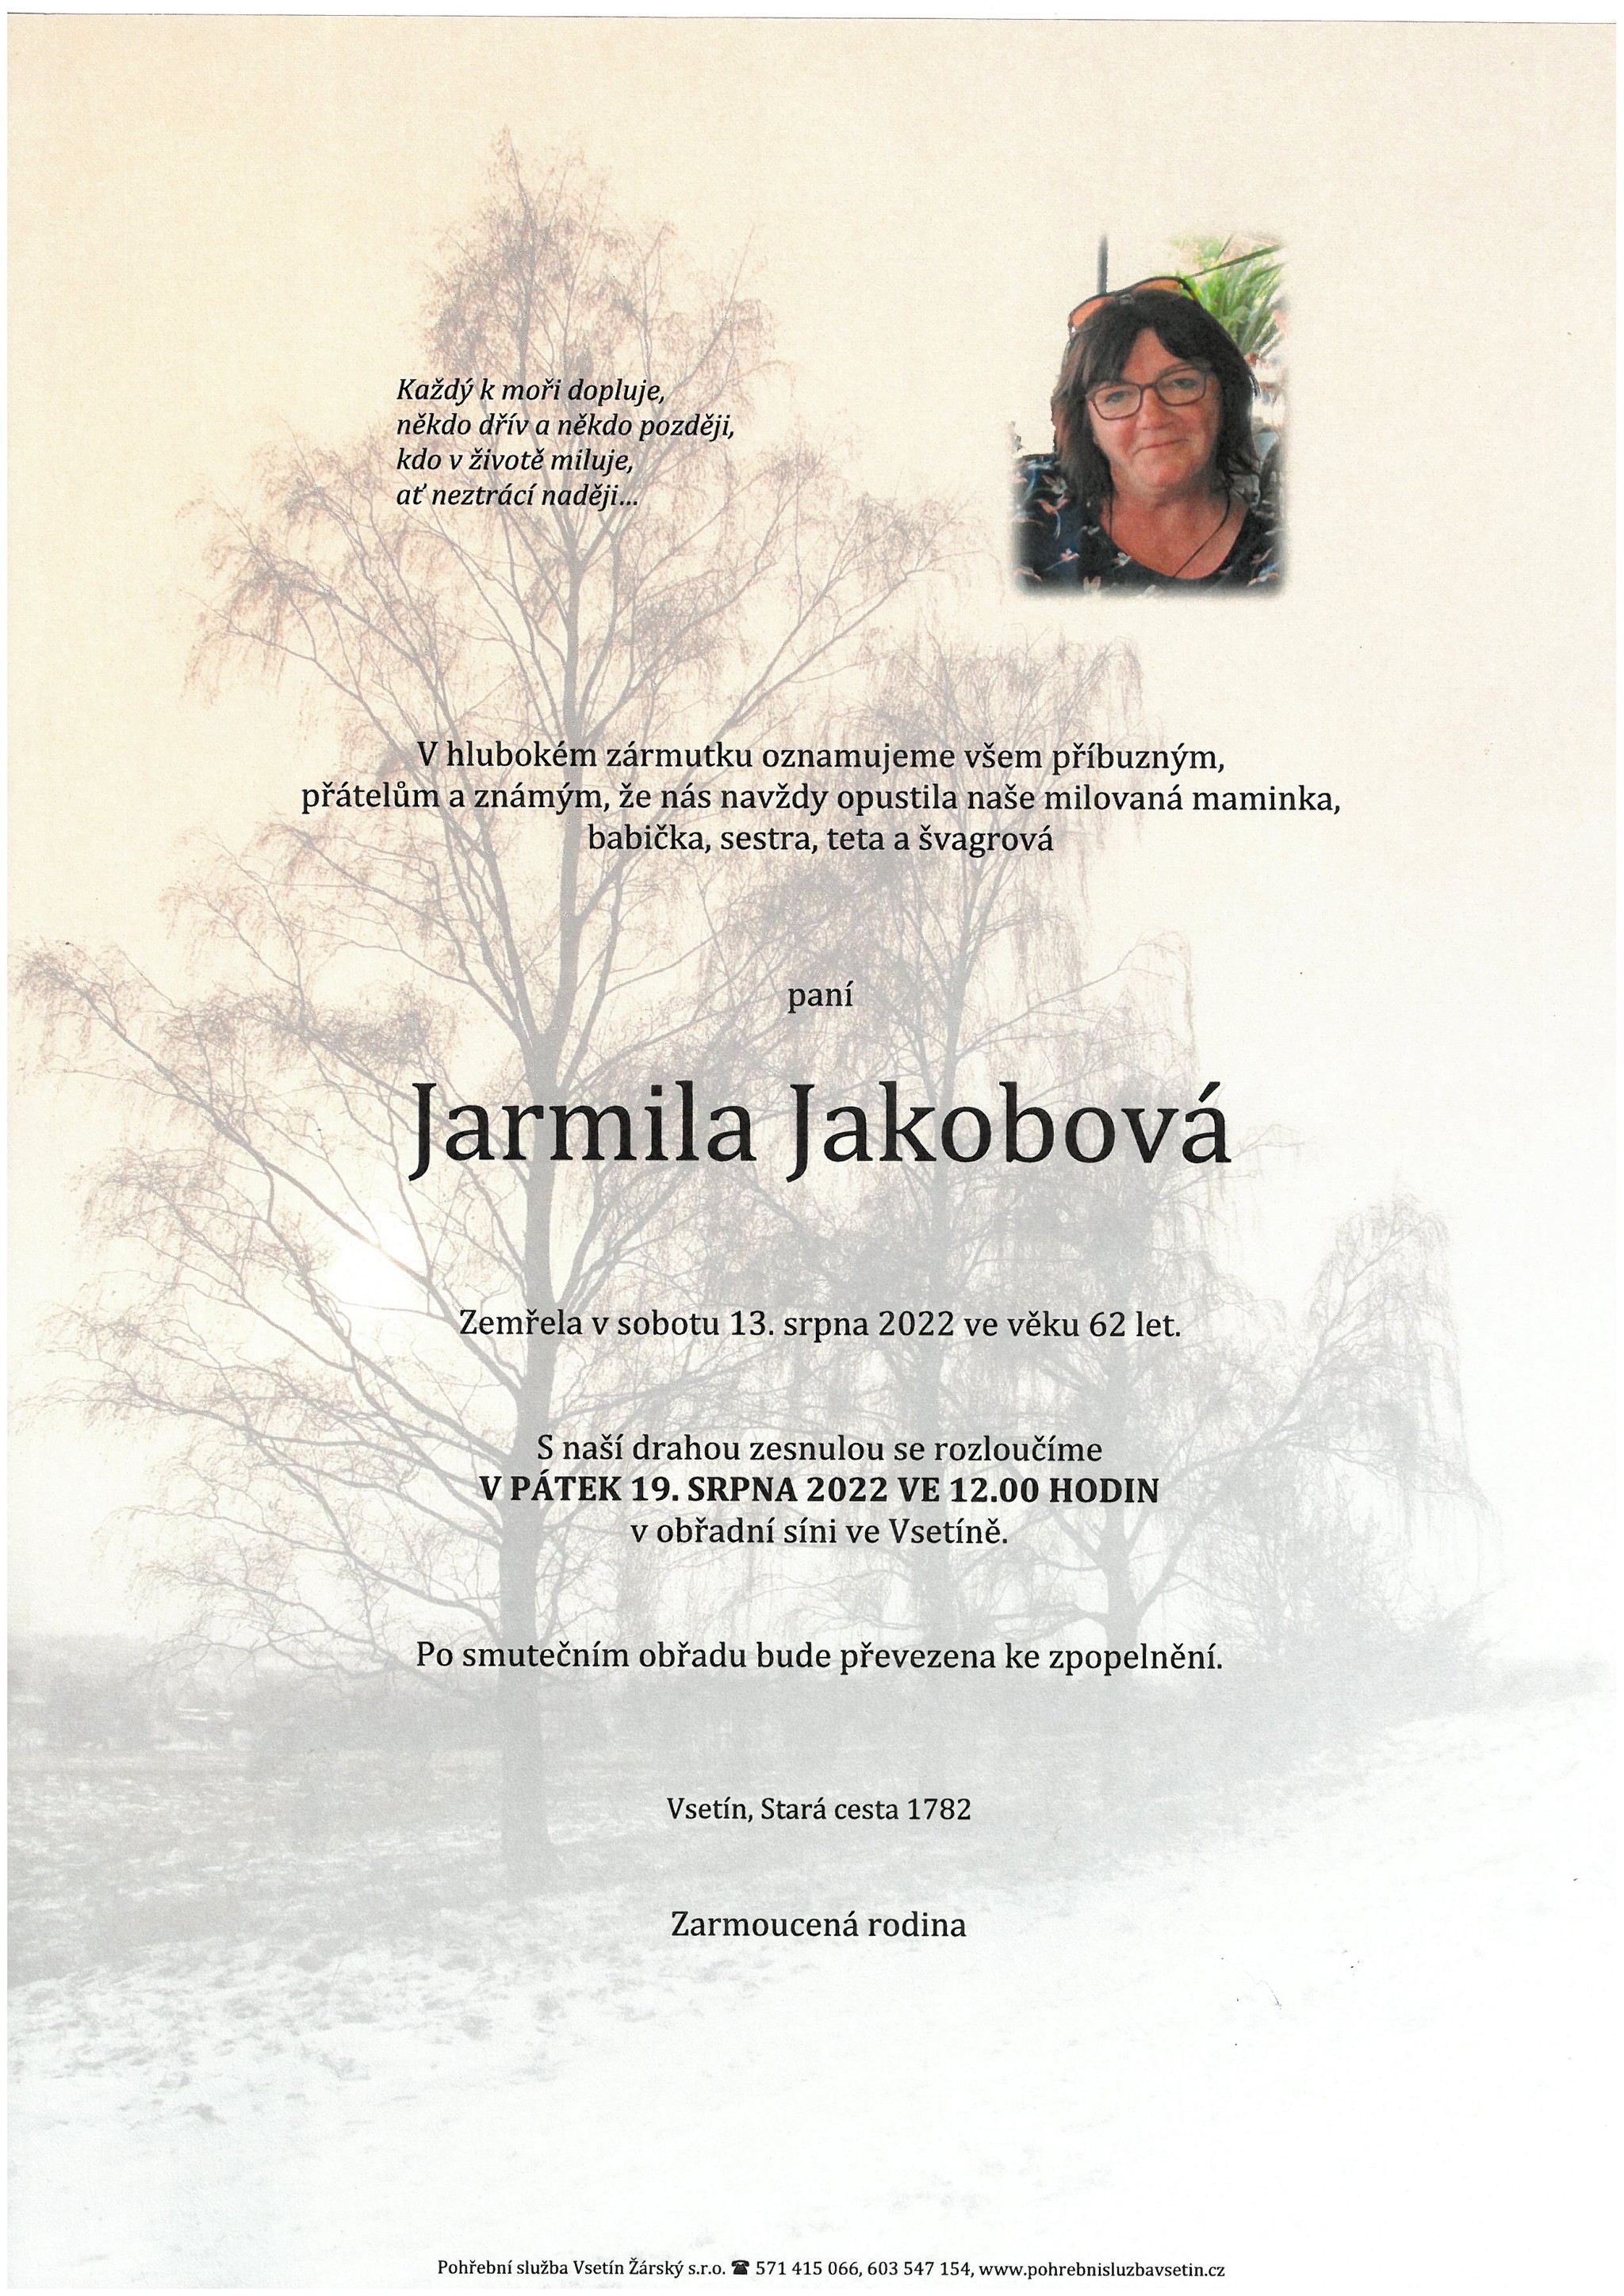 Jarmila Jakobová